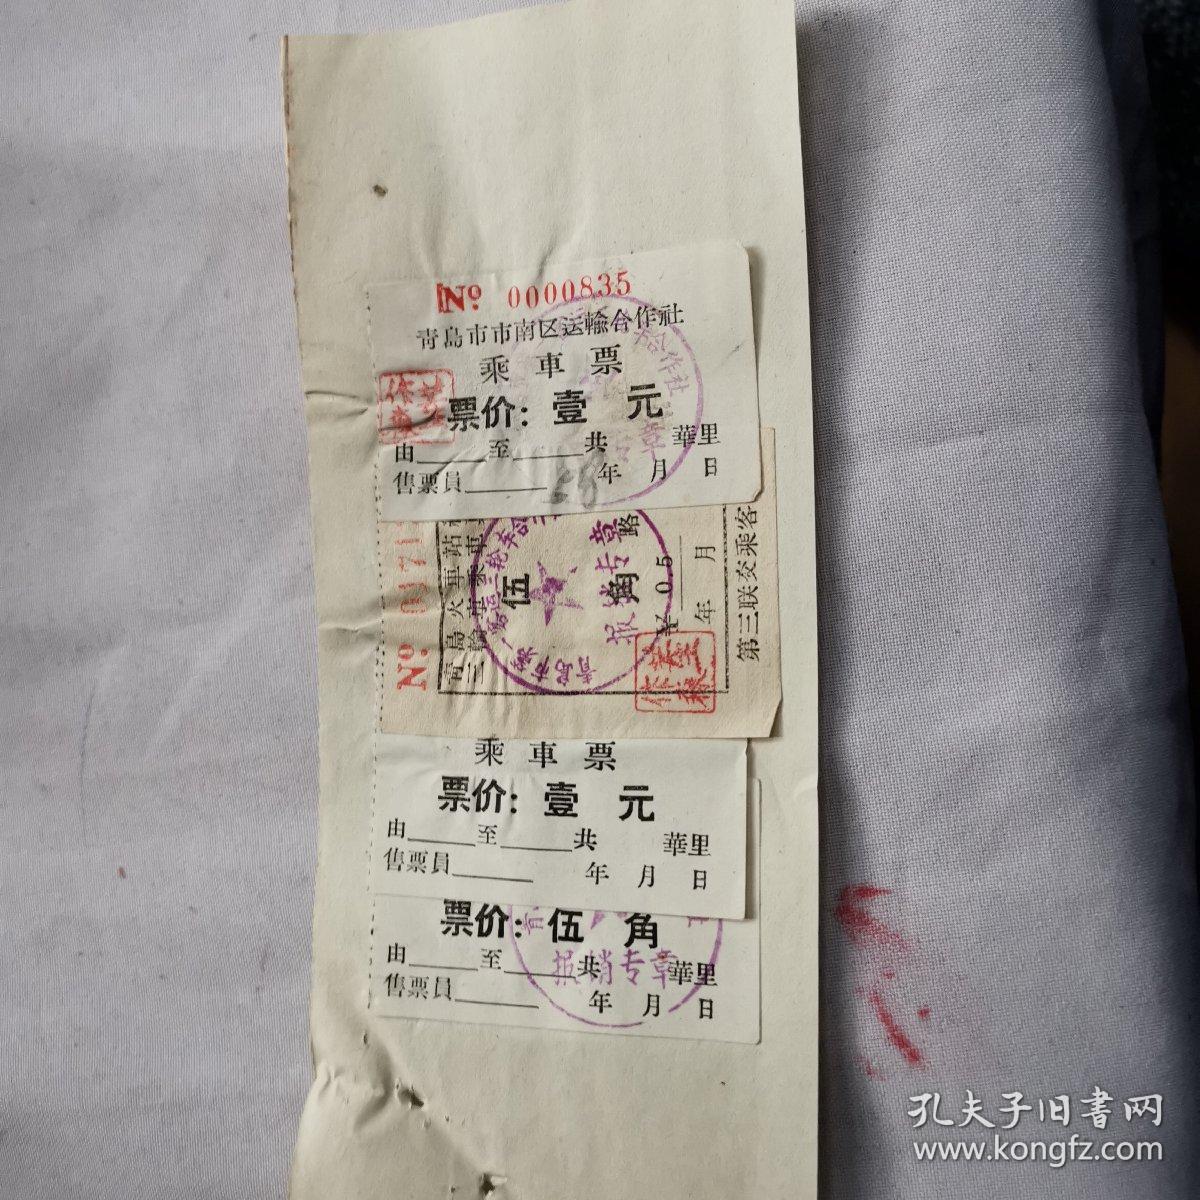 青岛出租车文献    1958年青岛三轮车合作社乘车票4张   张贴在一张纸上     同一来源1958年票据